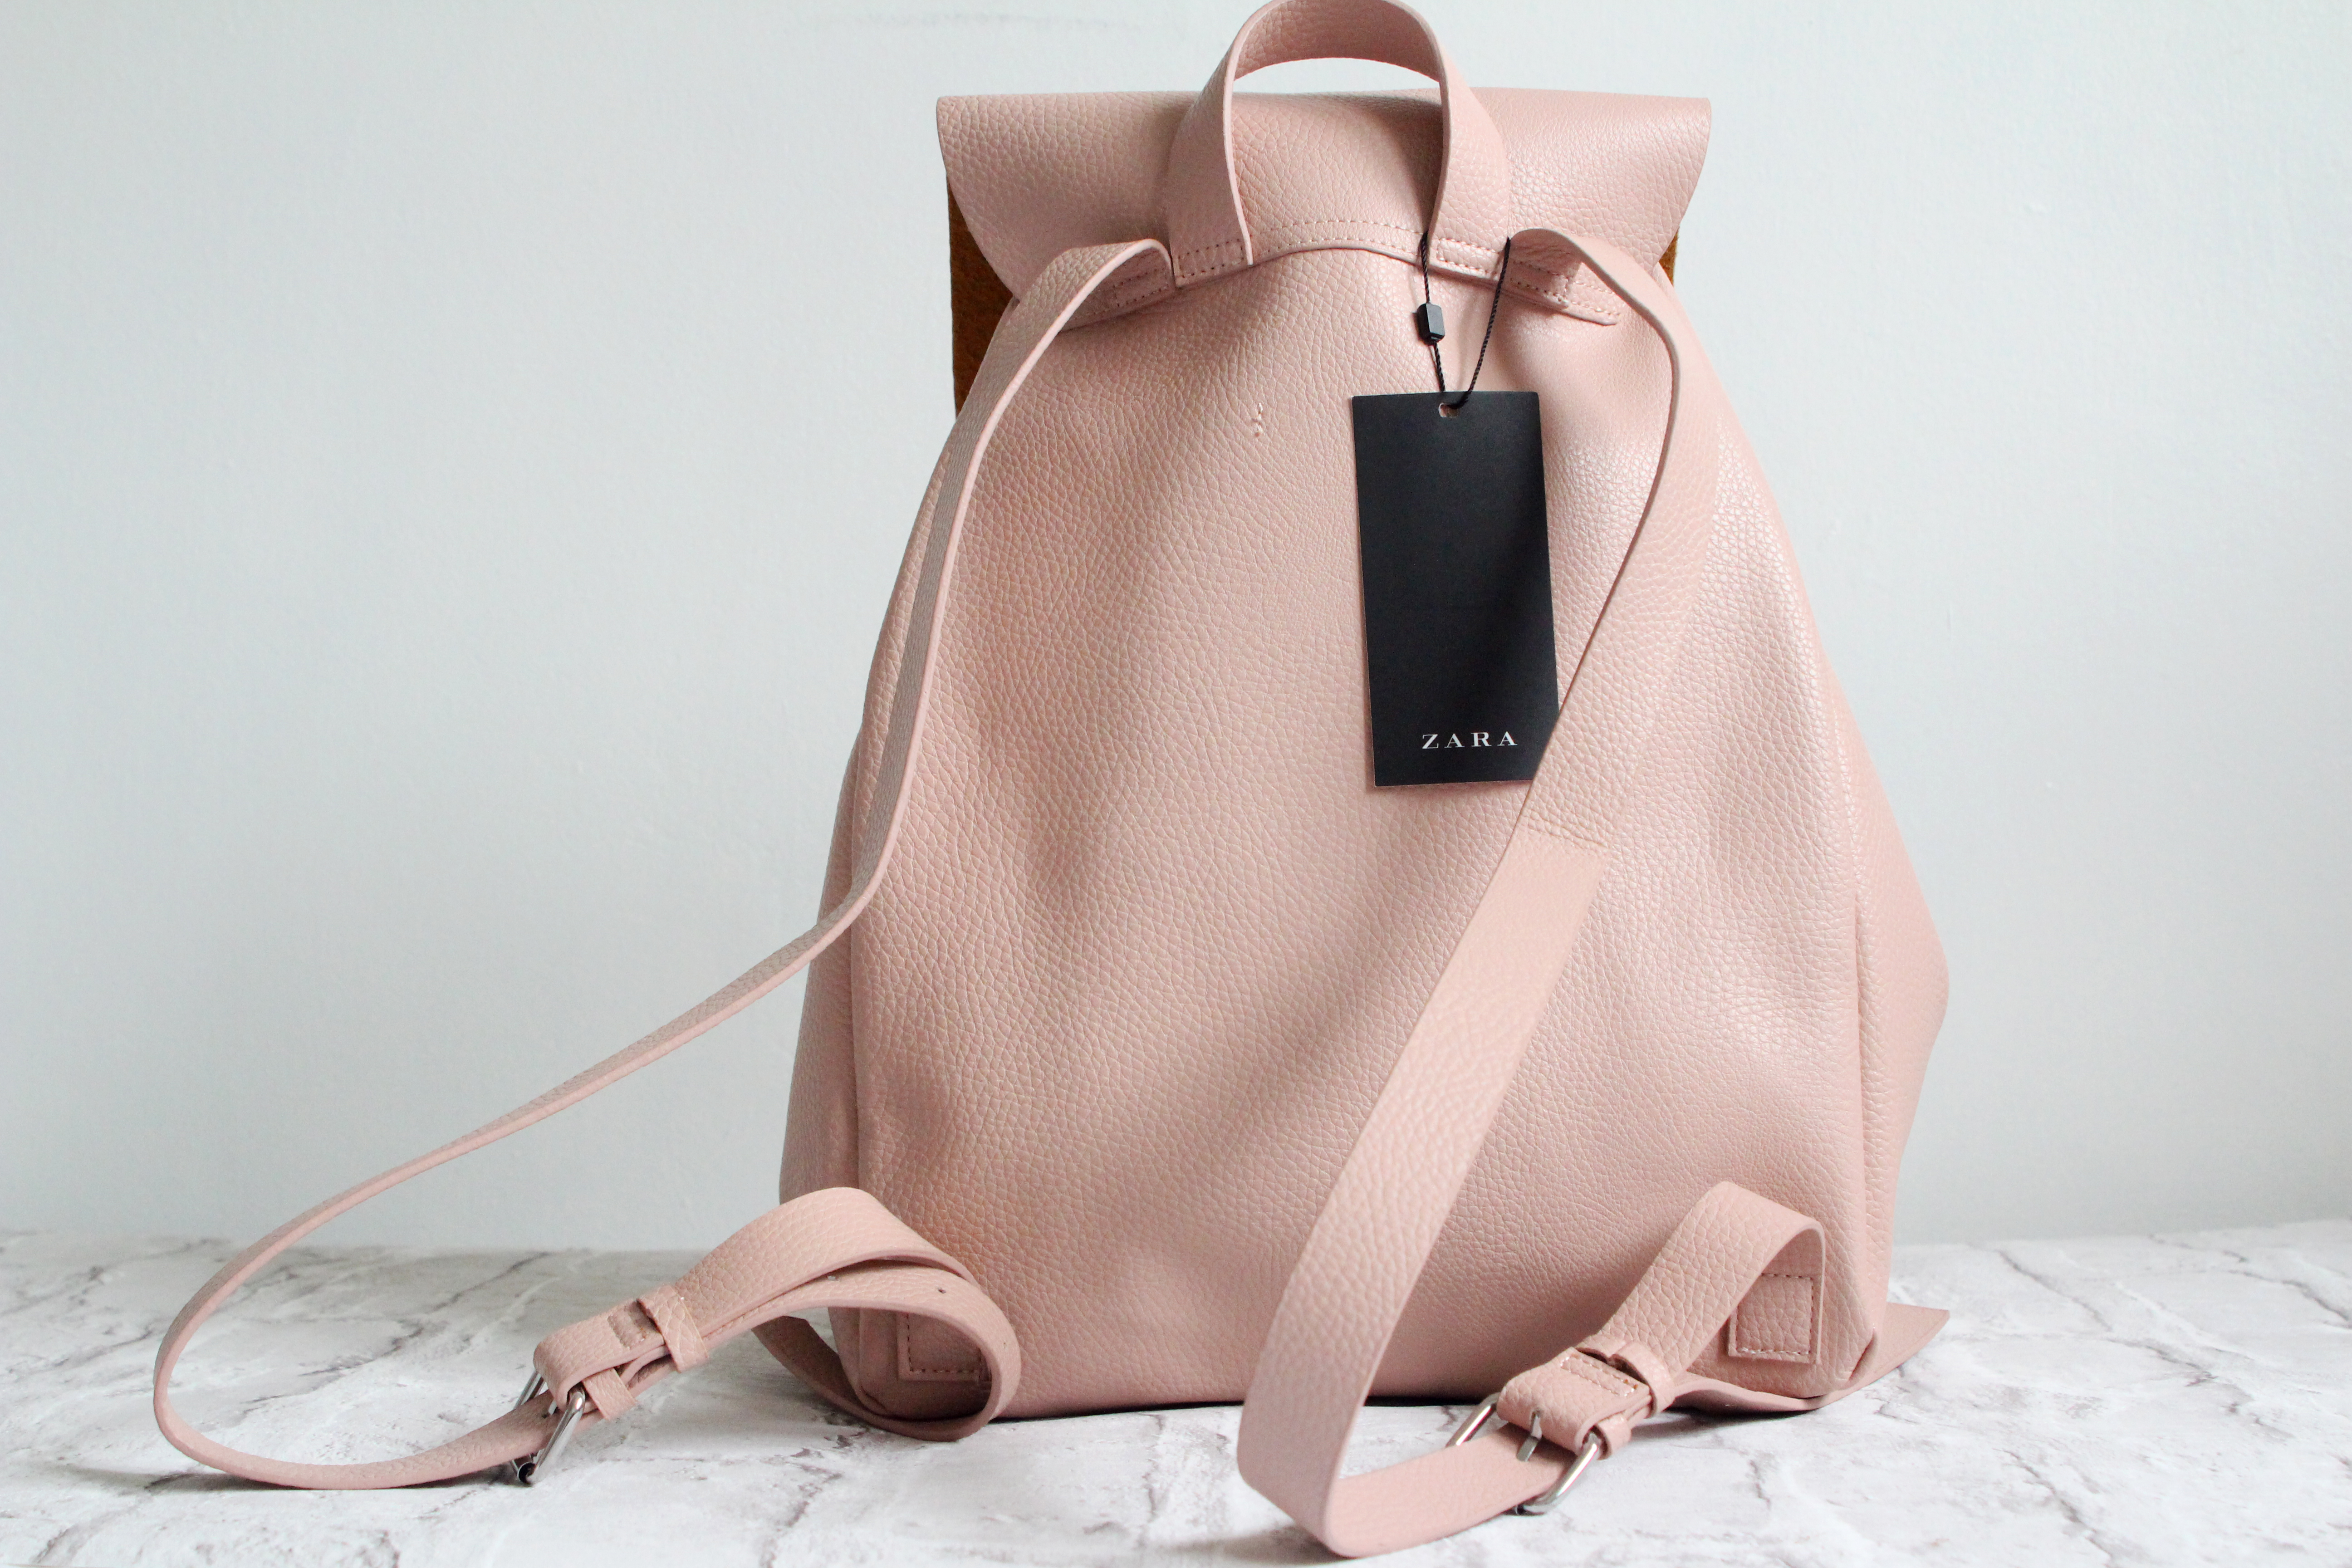 zara pink backpack